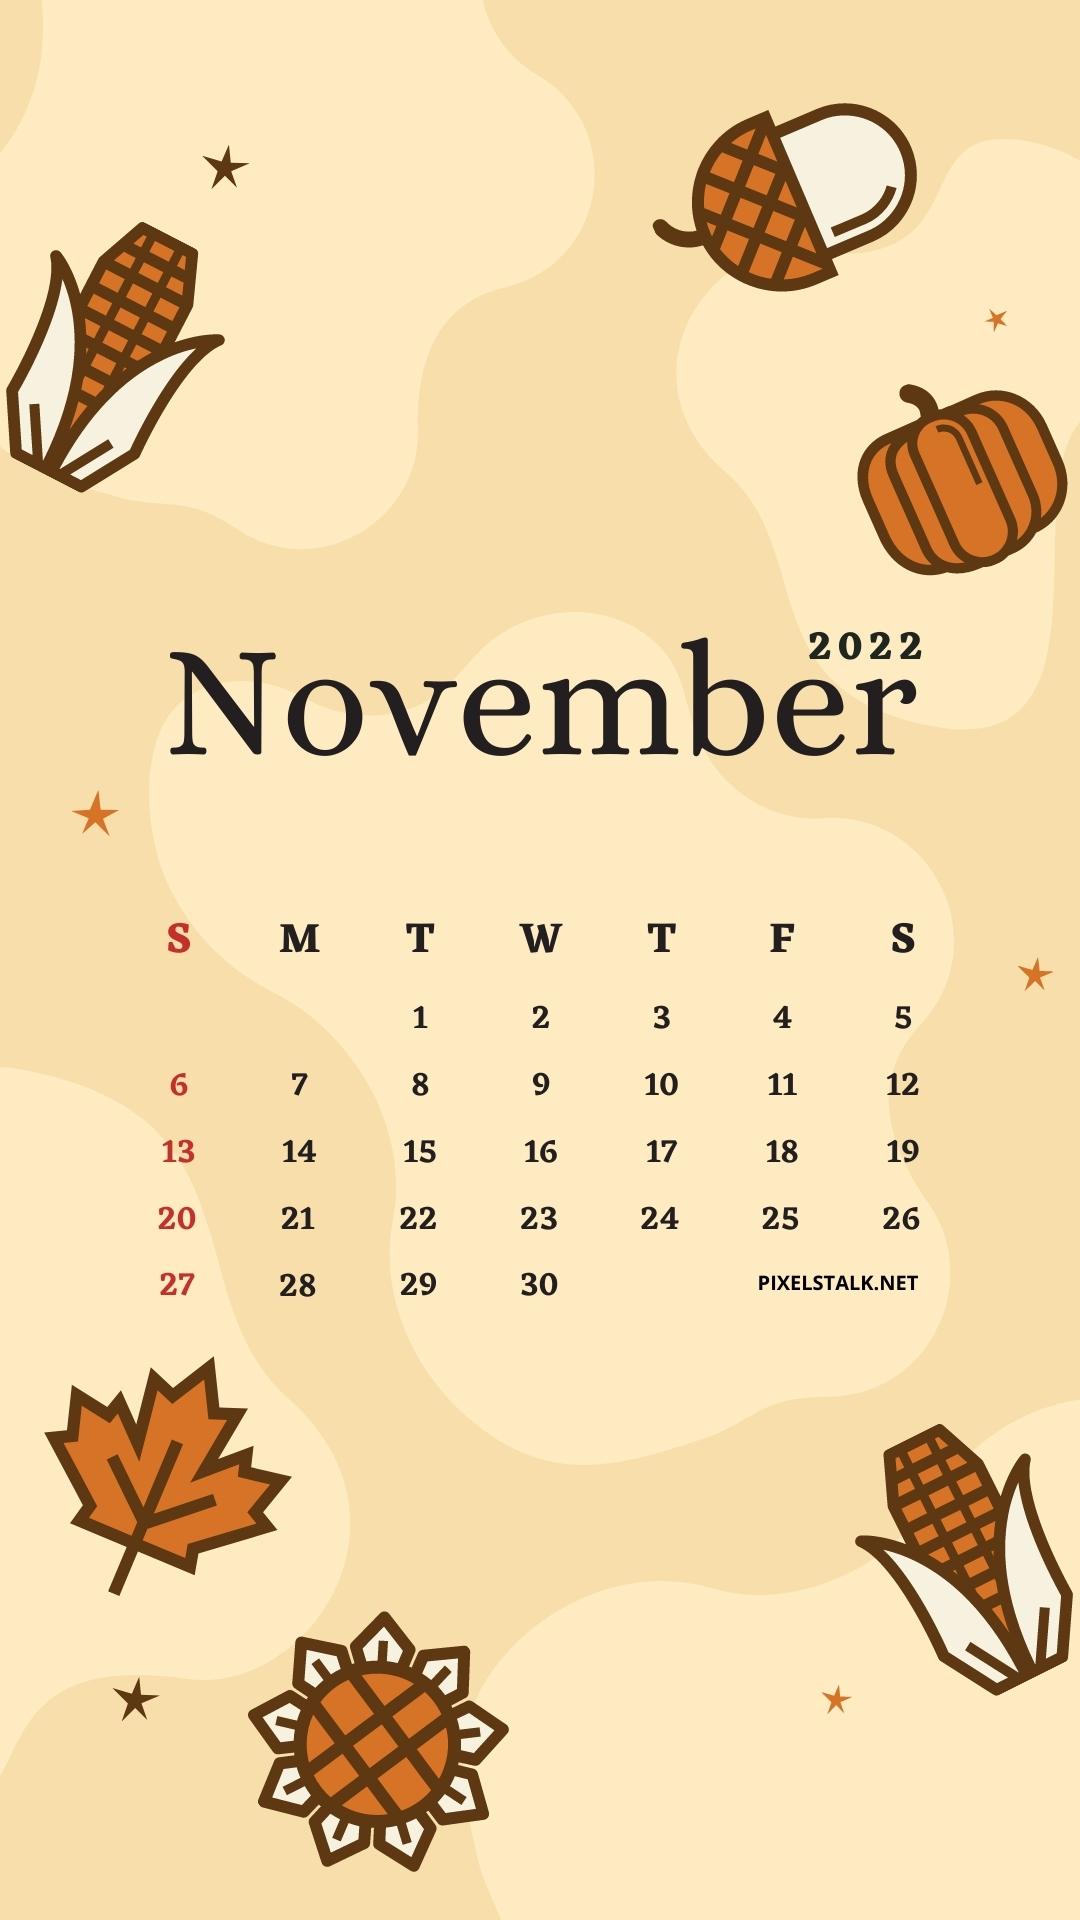 November 2022 Calendar Phone Wallpapers HD - PixelsTalk.Net